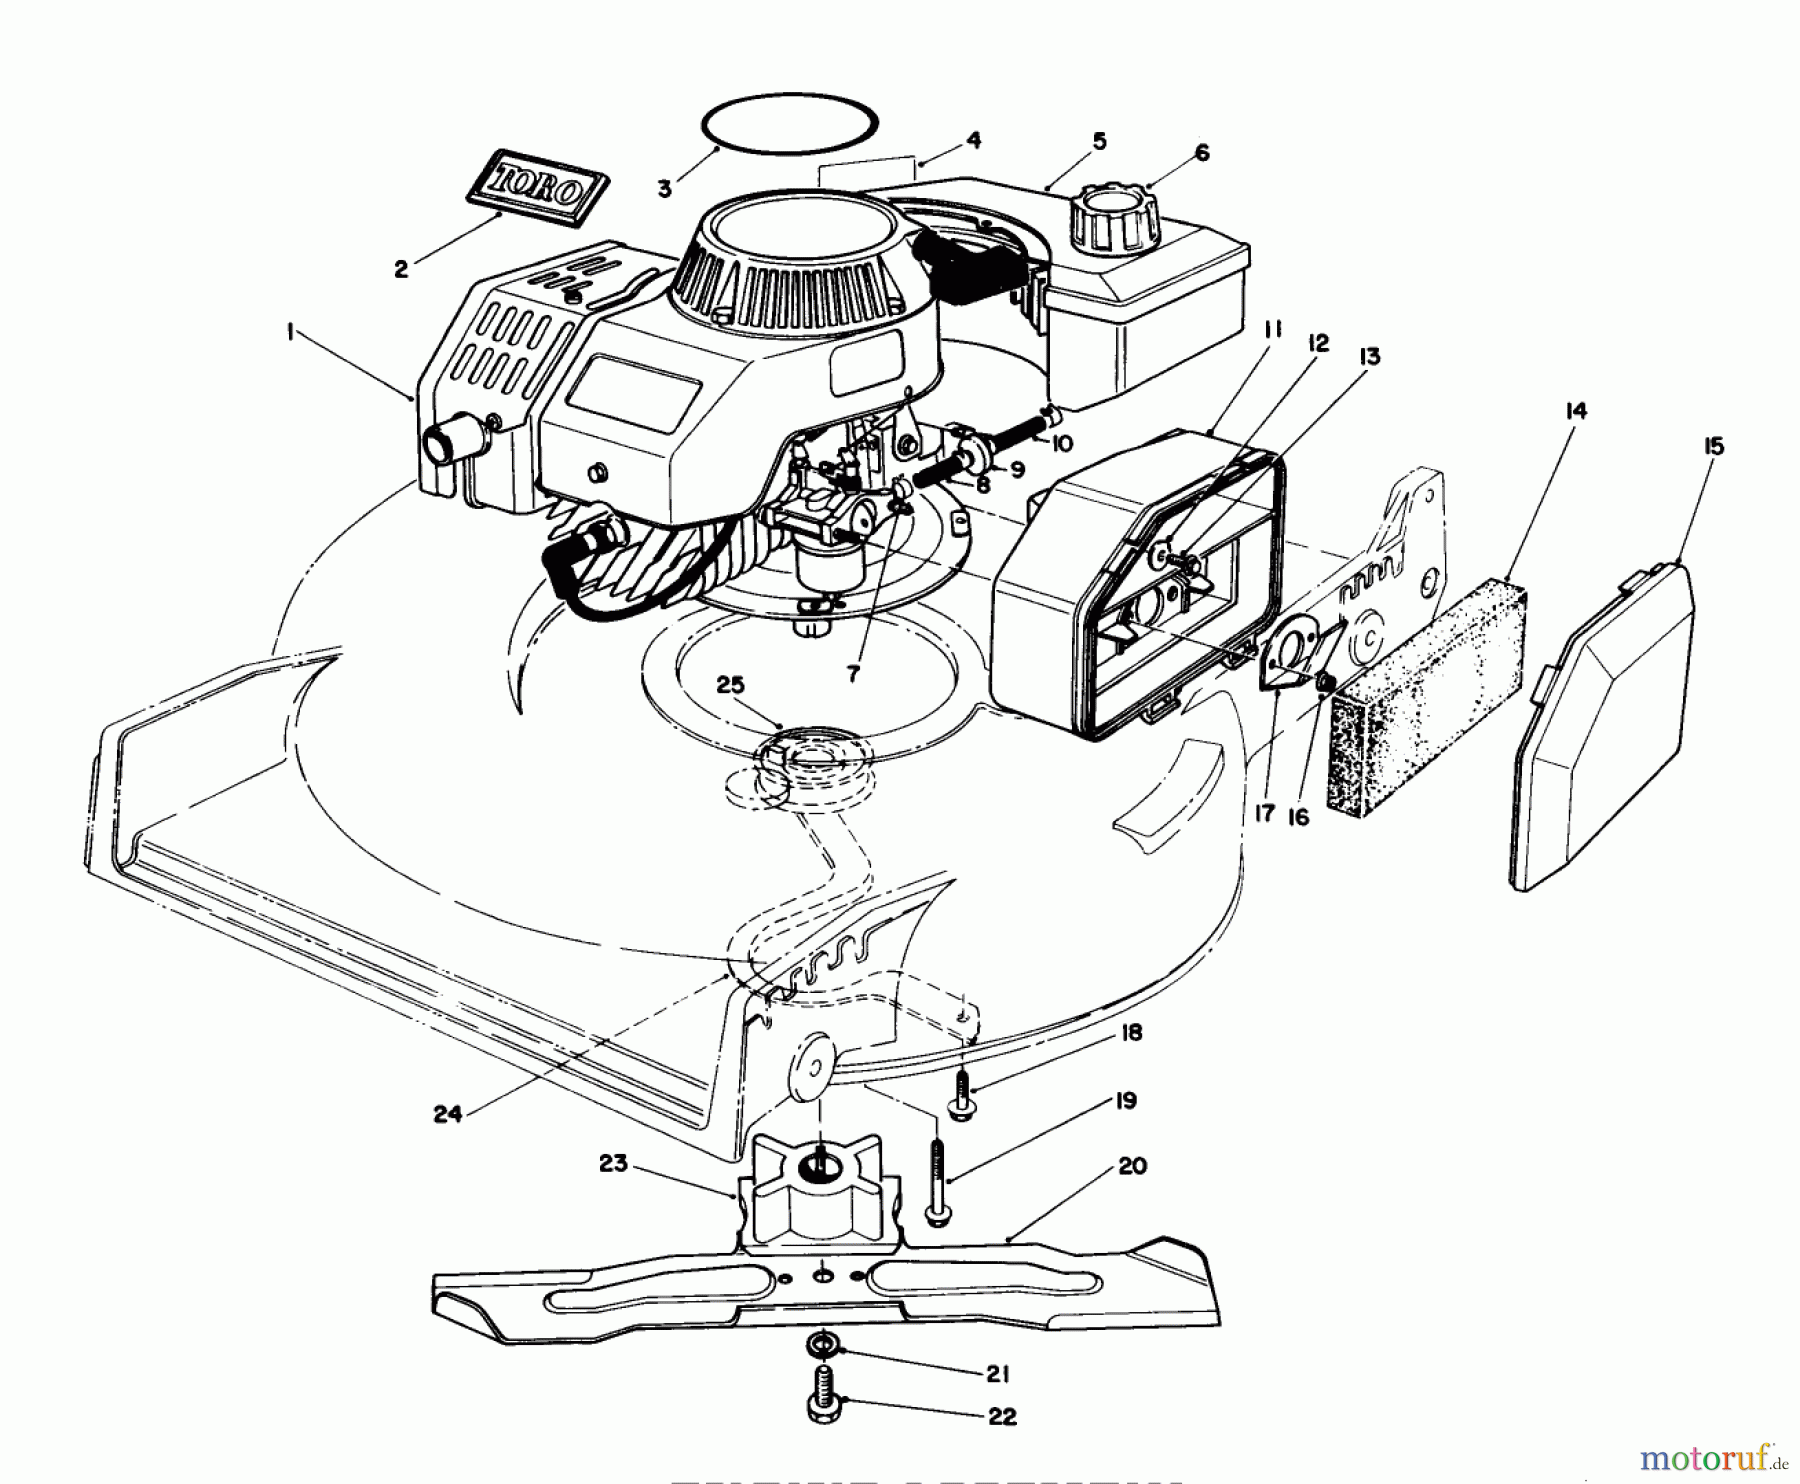  Toro Neu Mowers, Walk-Behind Seite 1 20747C - Toro Lawnmower, 1988 (8000001-8999999) ENGINE ASSEMBLY (MODEL NO. 47PG6)